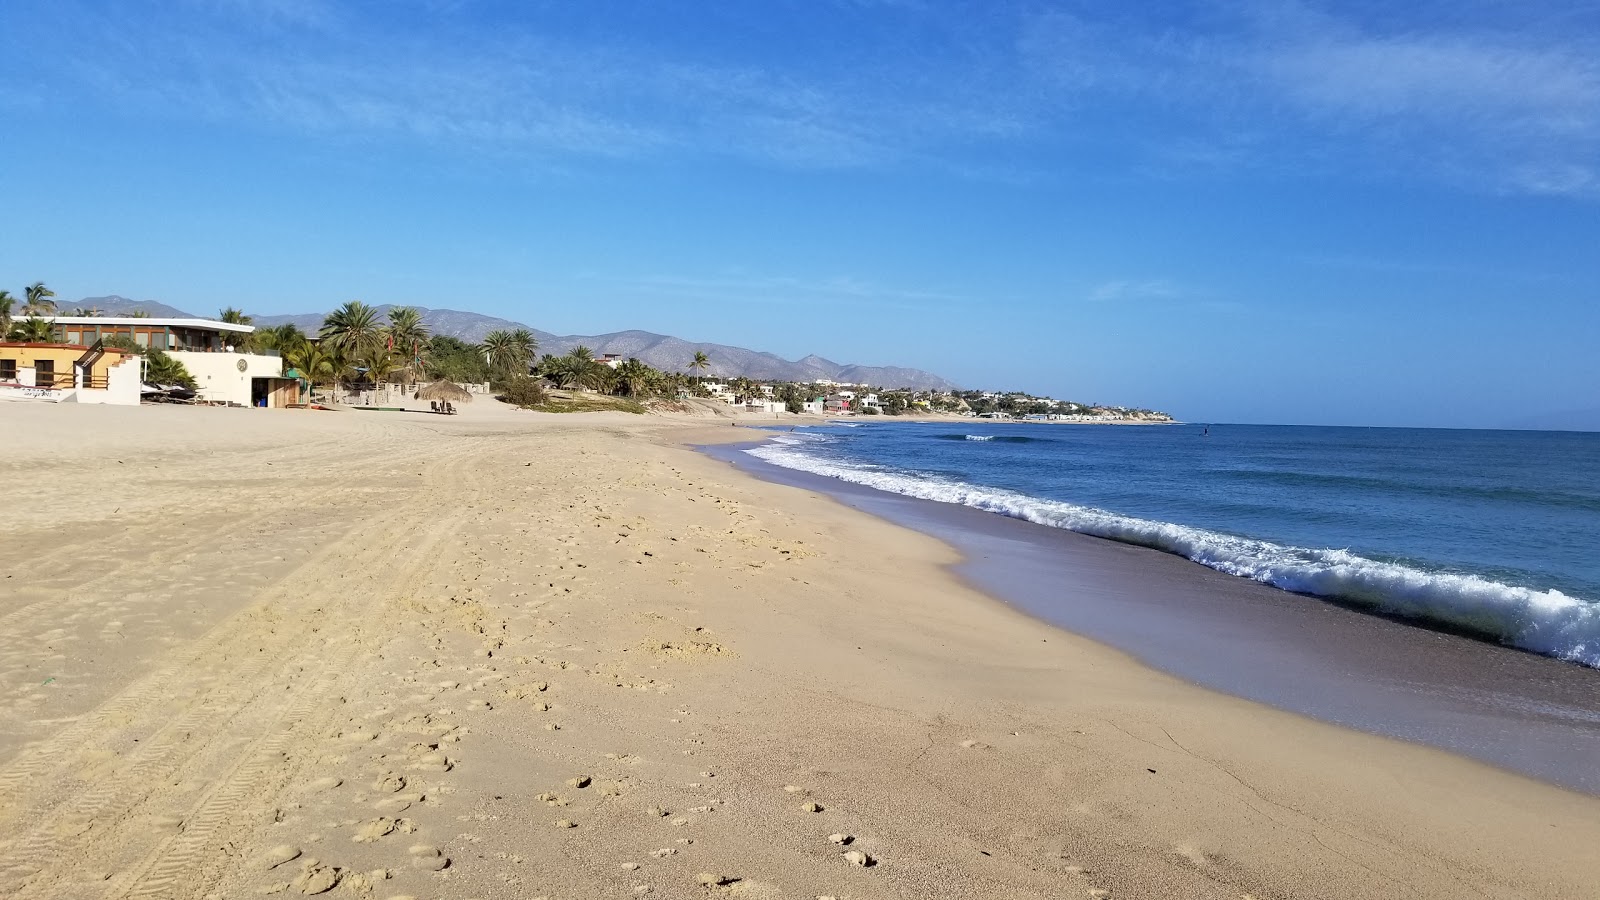 Playa La Ventana'in fotoğrafı turkuaz saf su yüzey ile